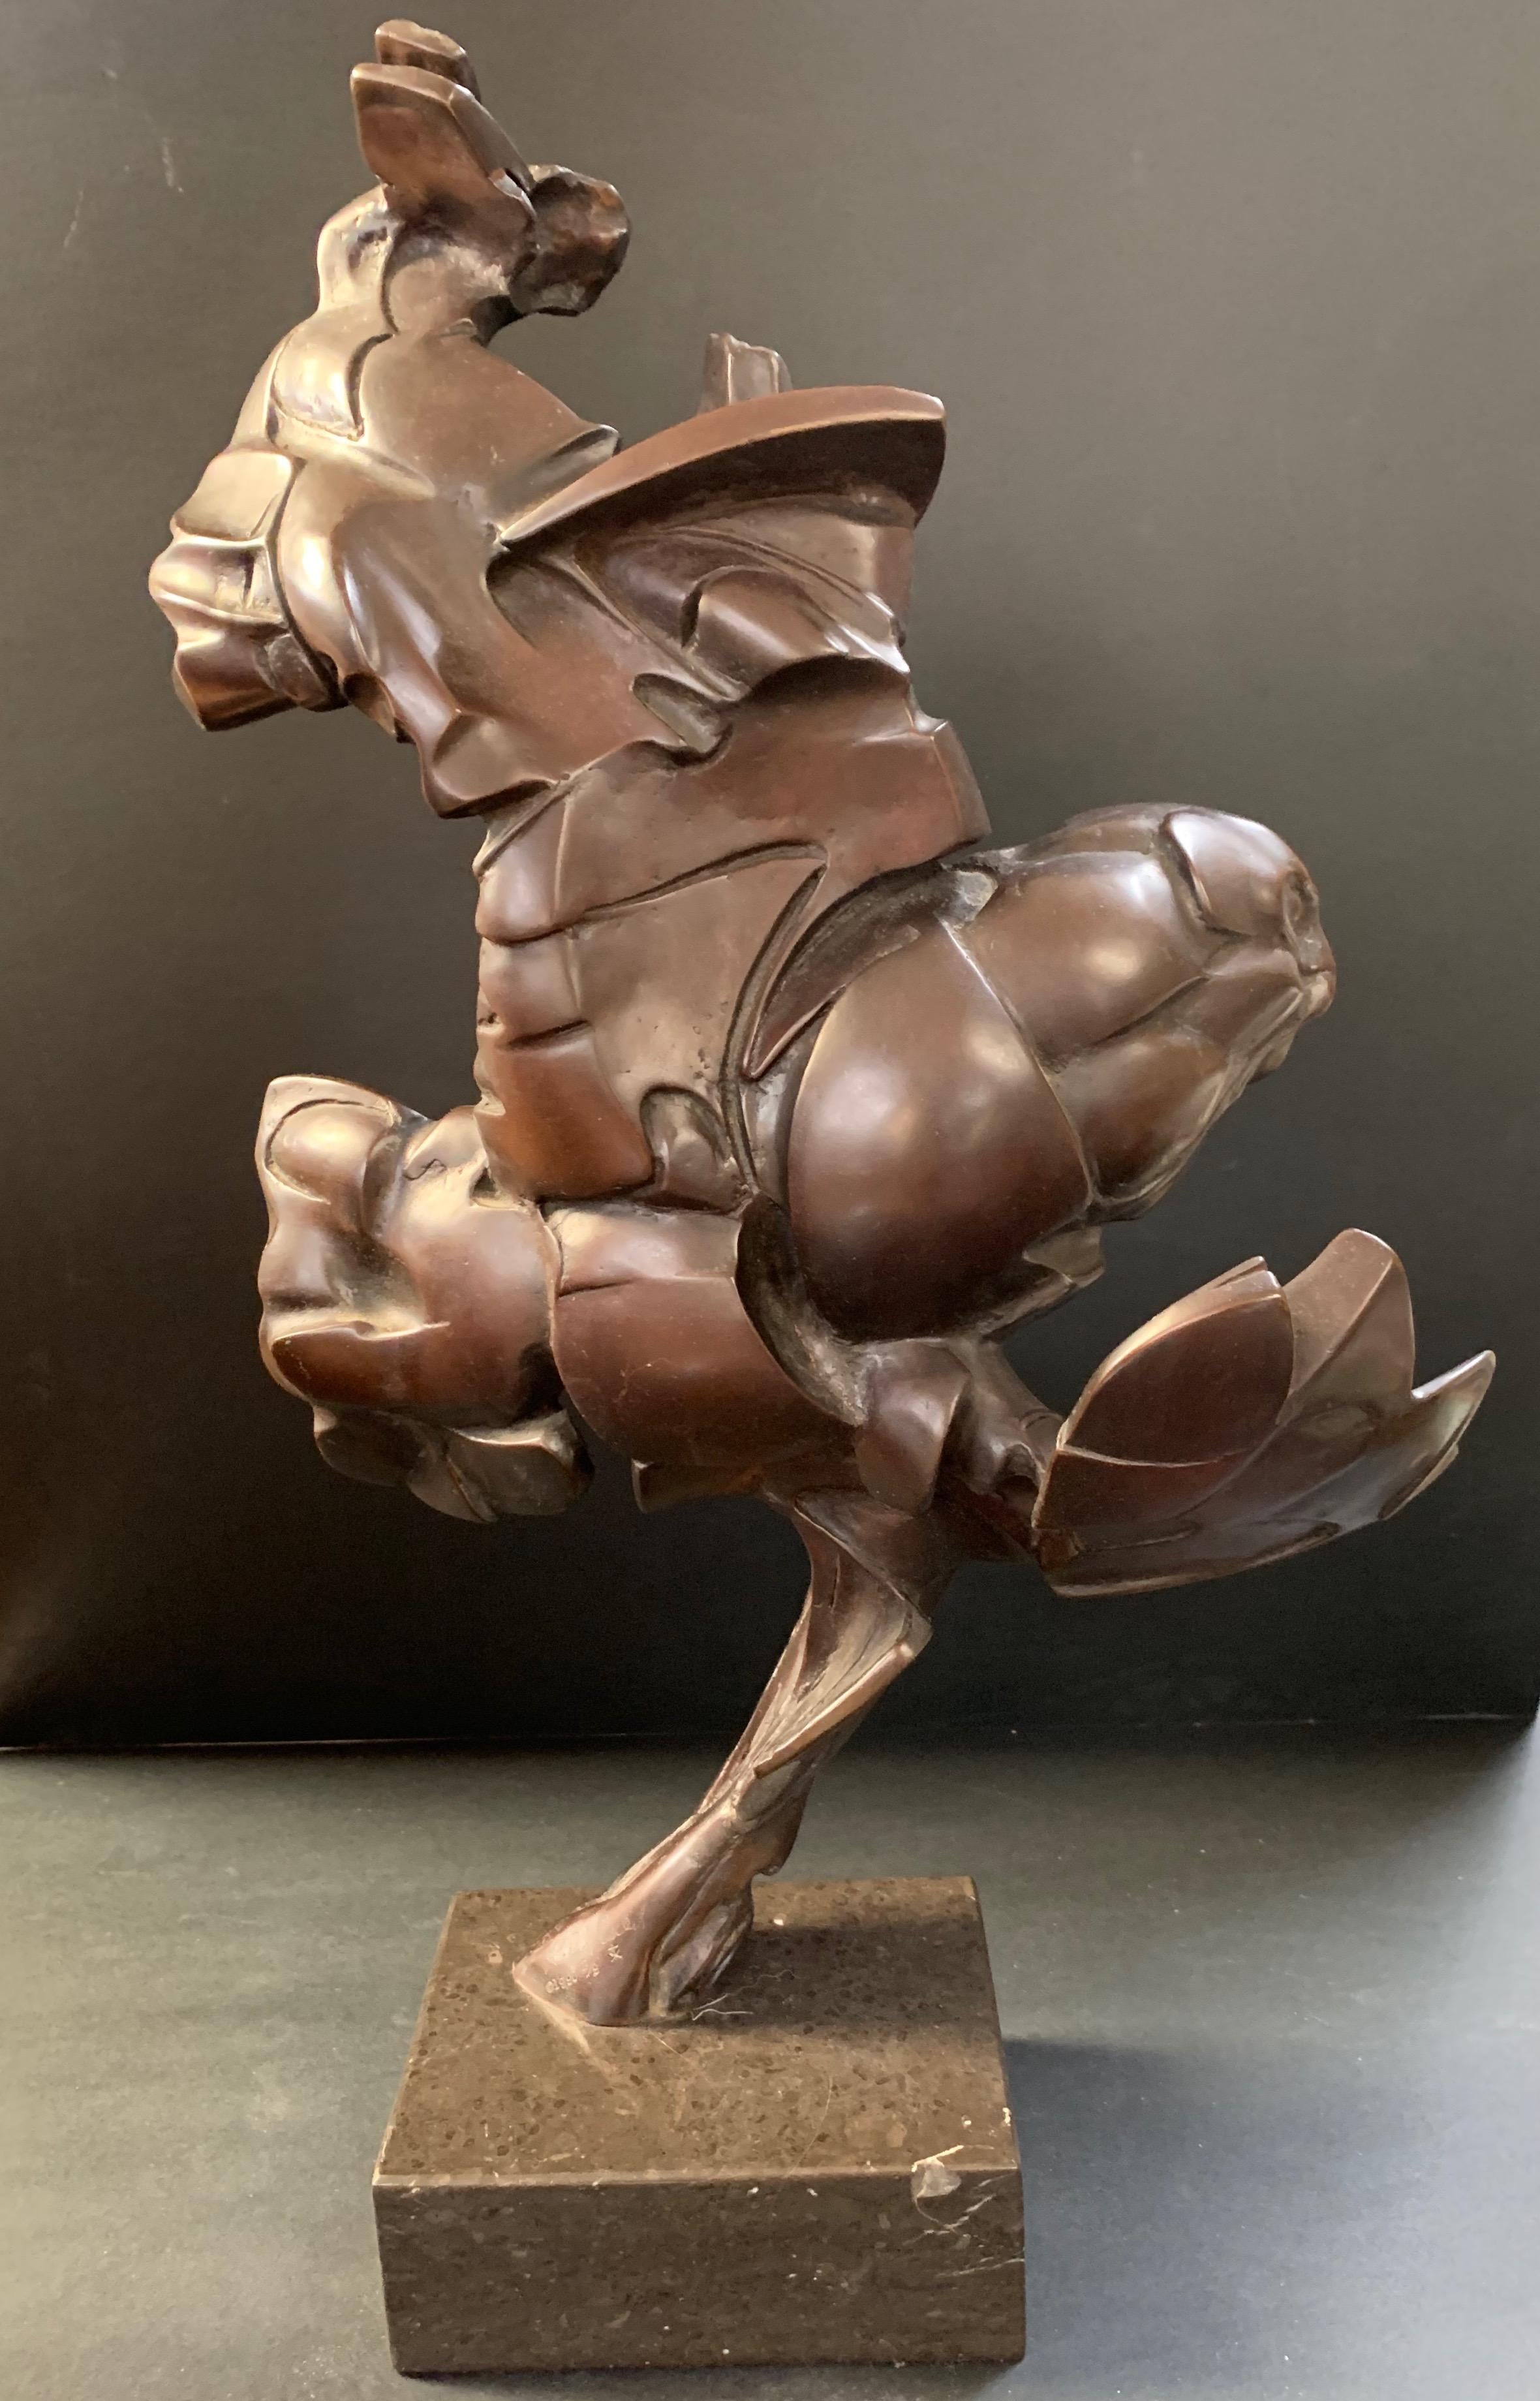 Dieses Werk ist eine Bronzeskulptur, die 1990 von Riho Kuld geschaffen wurde. Kuld wurde 1936 in Estland geboren, seine Werke werden in Museen in der ganzen Welt ausgestellt, u. a. in Estland, Moskau, Uljanowsk, Frankreich, Spanien und auch